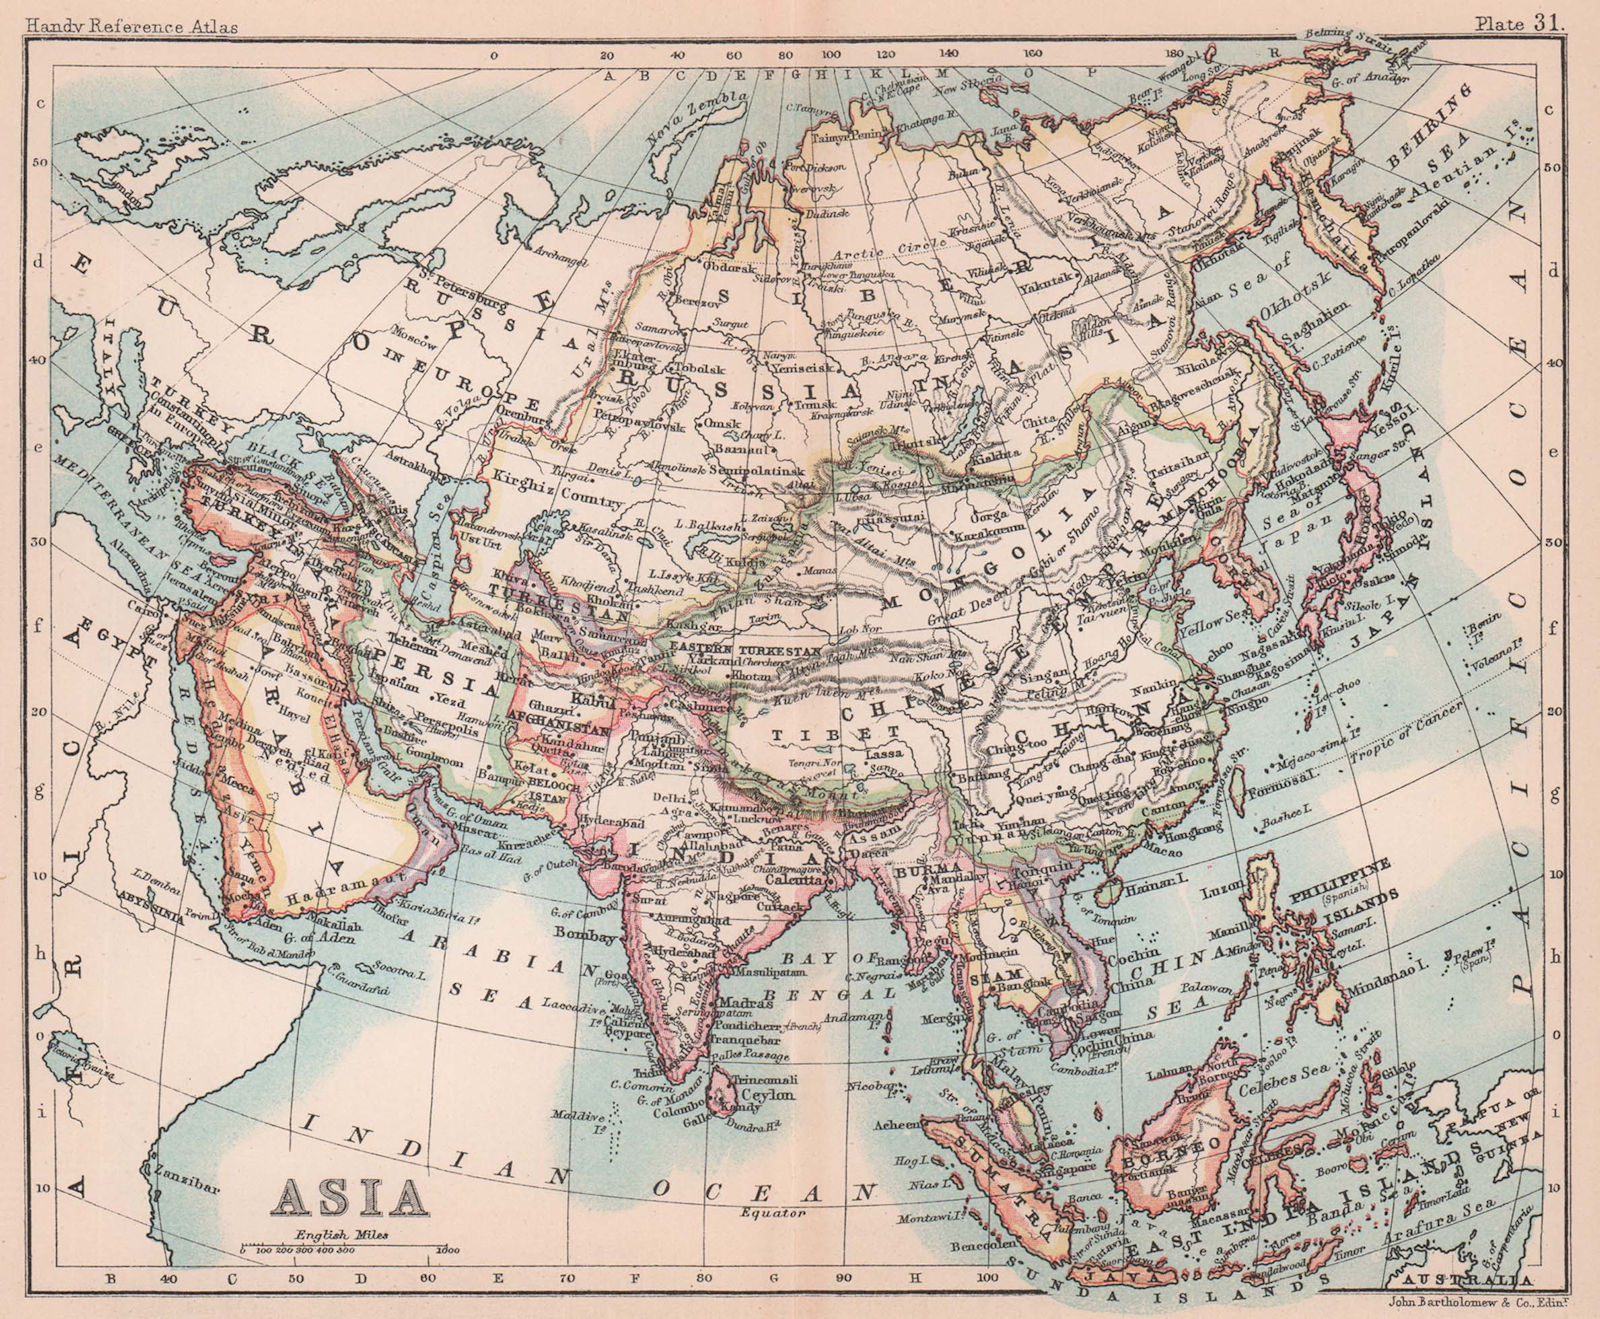 Associate Product Asia. Persia Siam Anam China Corea. BARTHOLOMEW 1893 old antique map chart